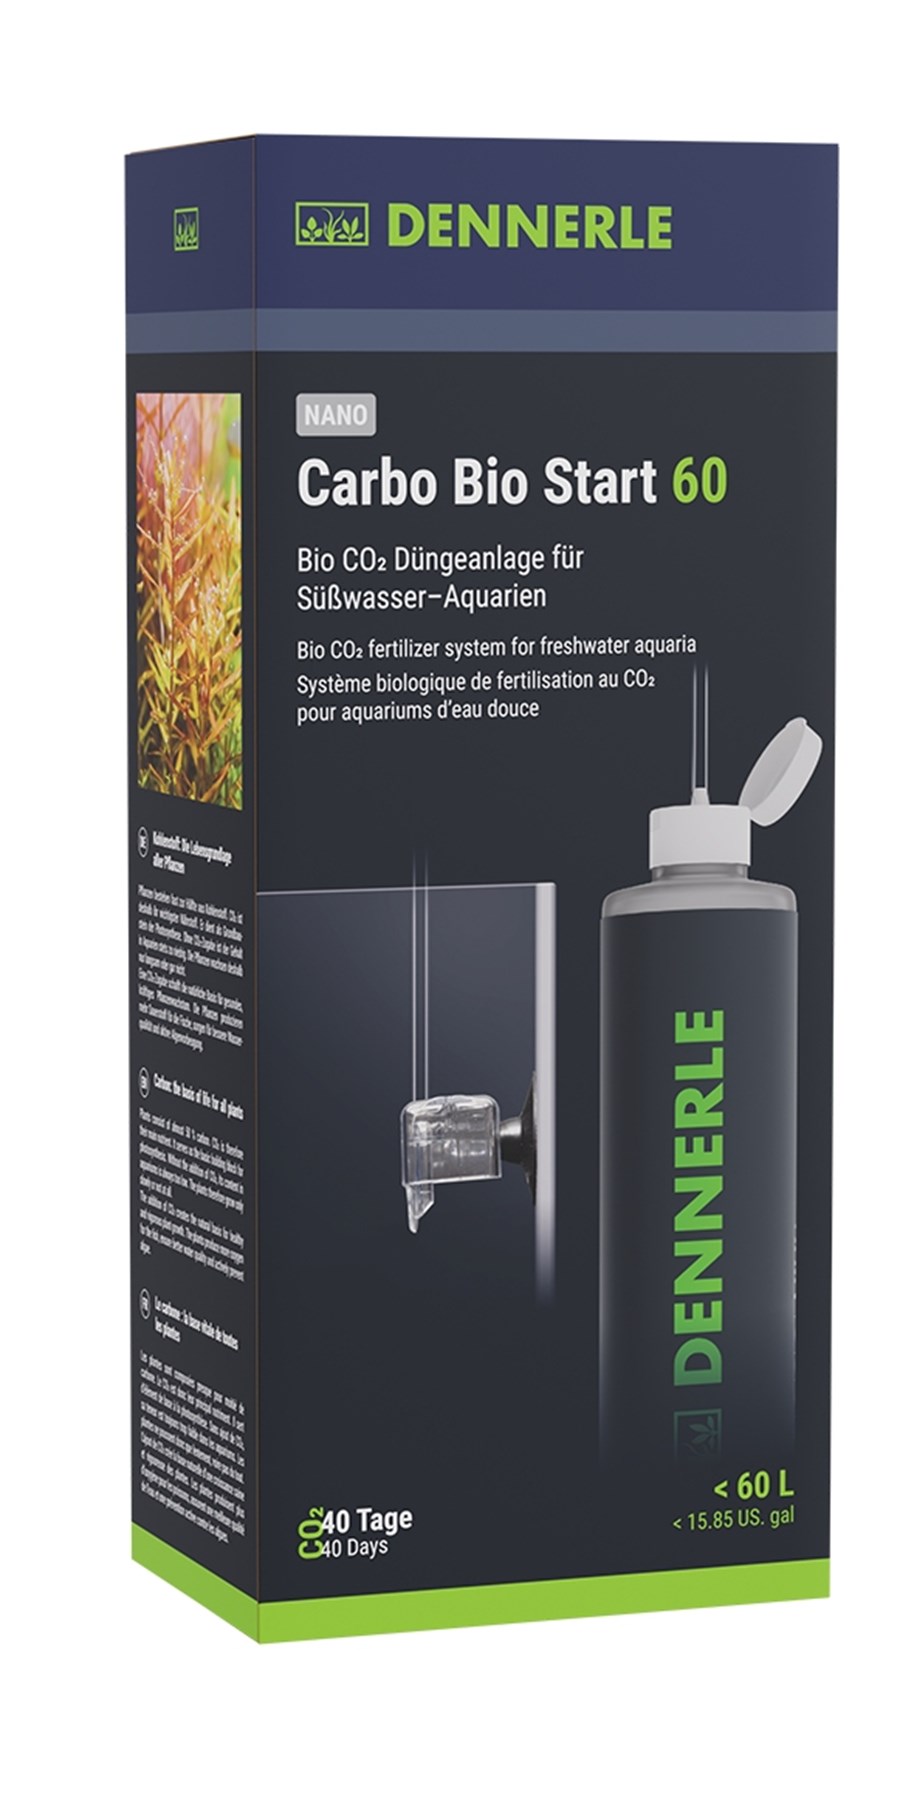 Carbo Bio Start 60